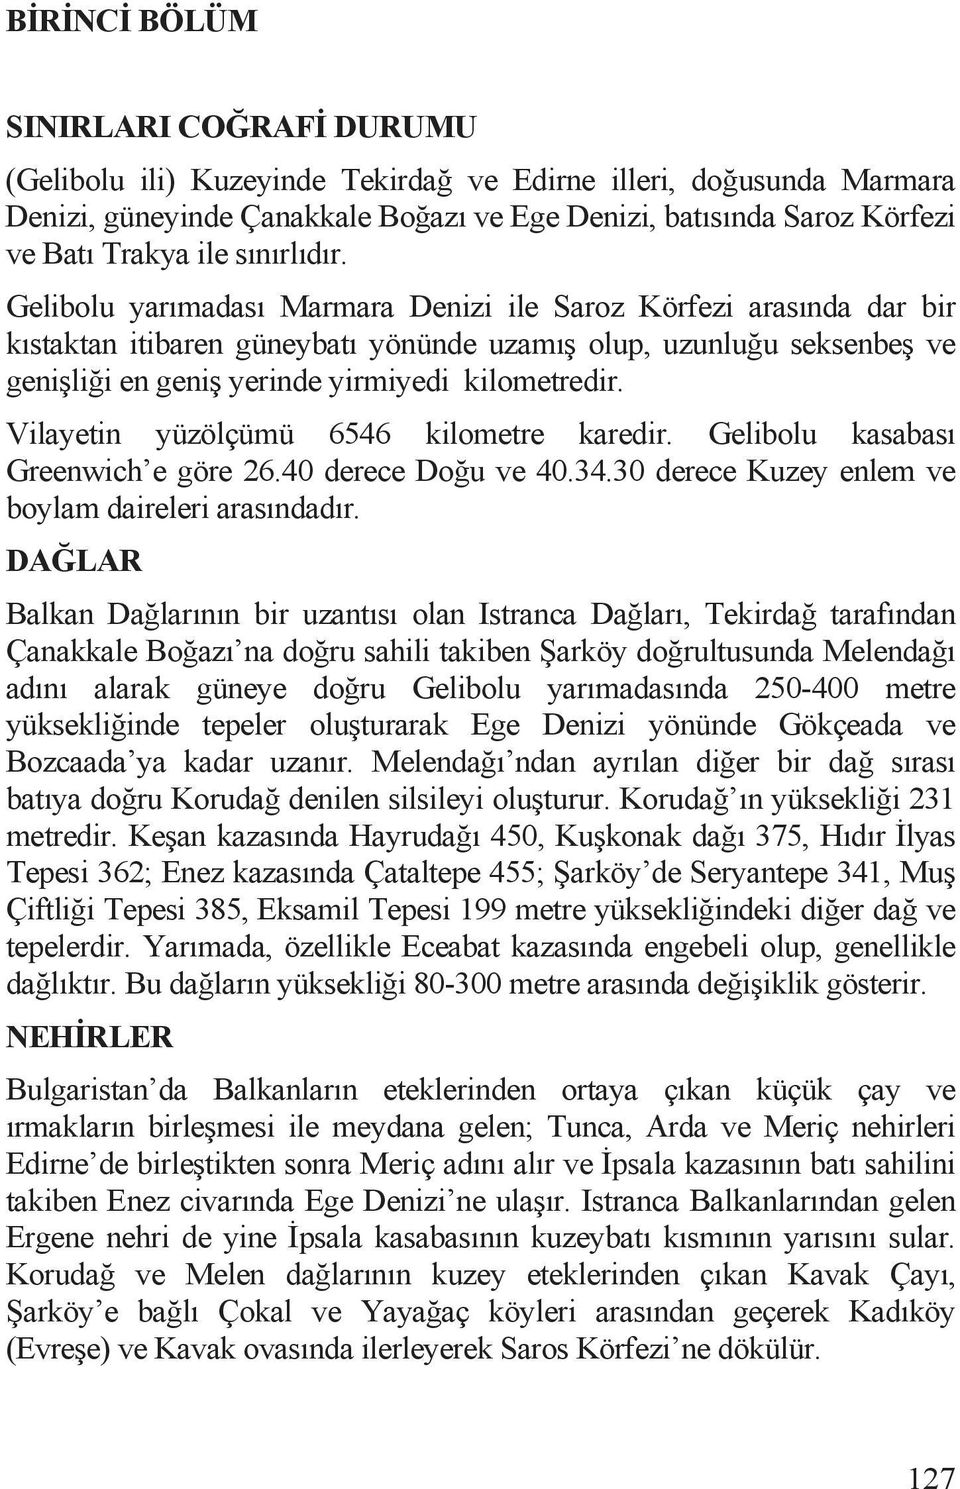 Gelibolu yarõmadasõ Marmara Denizi ile Saroz Körfezi arasõnda dar bir kõstaktan itibaren güneybatõ yönünde uzamõ olup, uzunlu u seksenbe ve geni li i en geni yerinde yirmiyedi kilometredir.